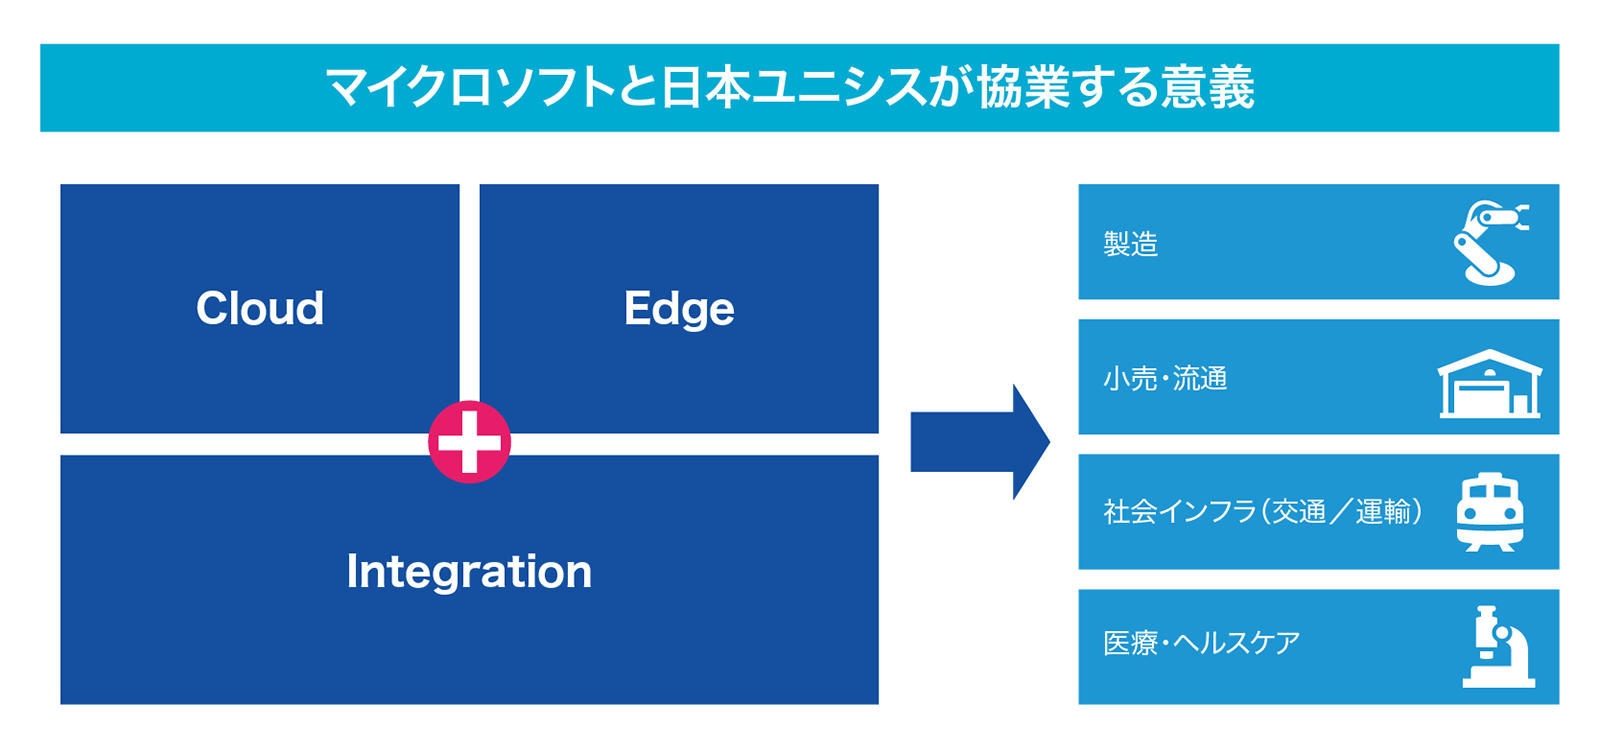 マイクロソフトと日本ユニシスが協業する意義